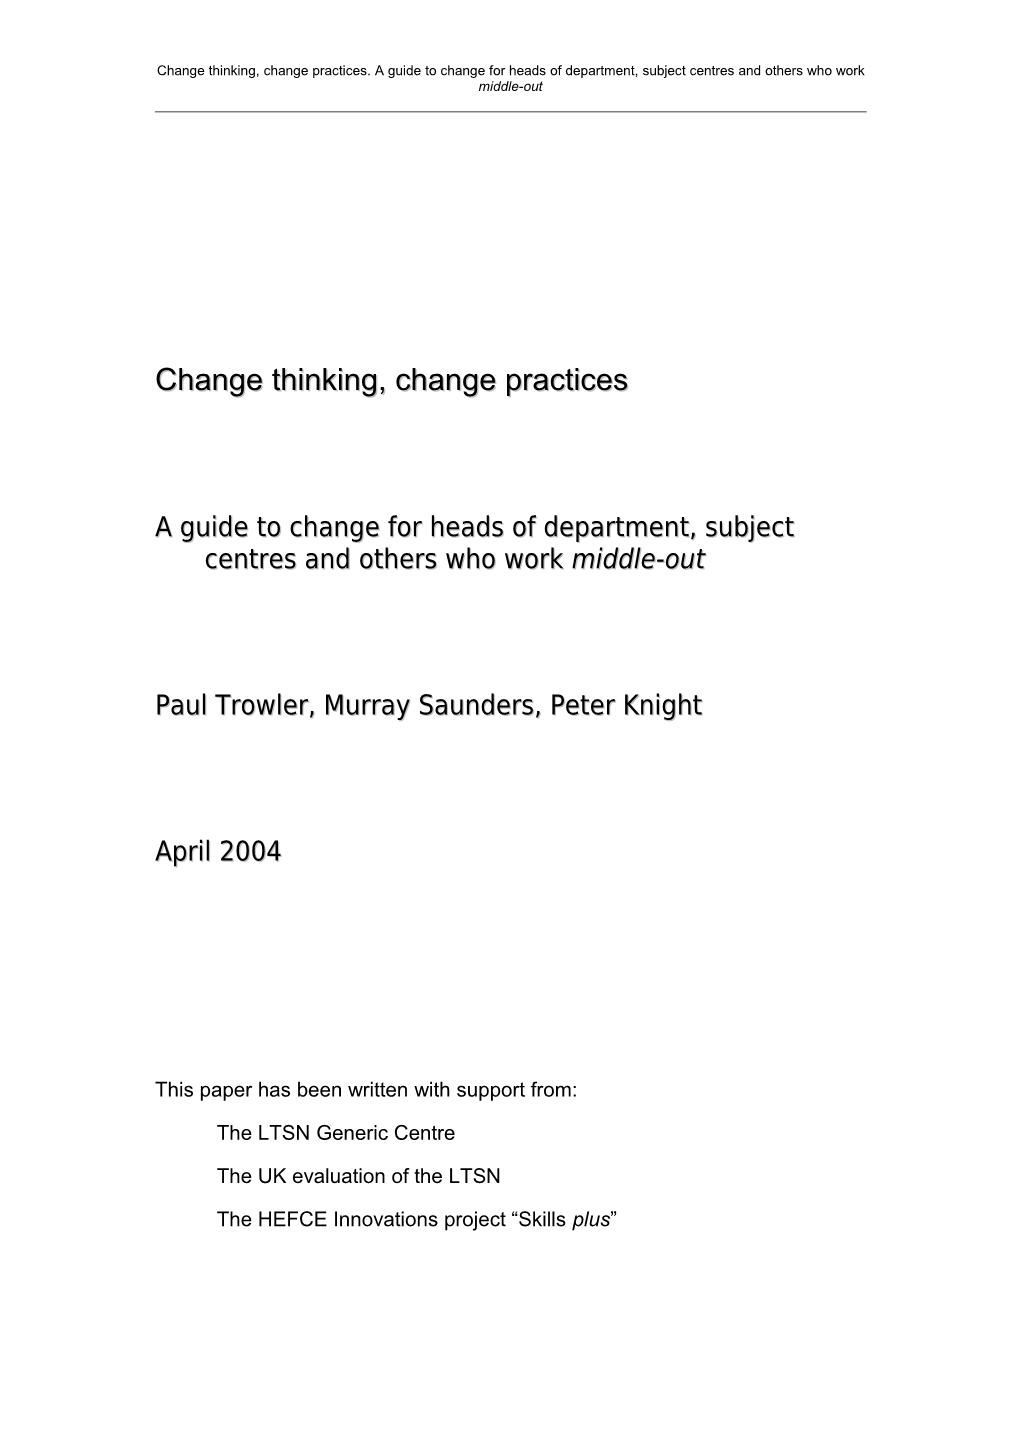 A Generic Centre Publication on Change